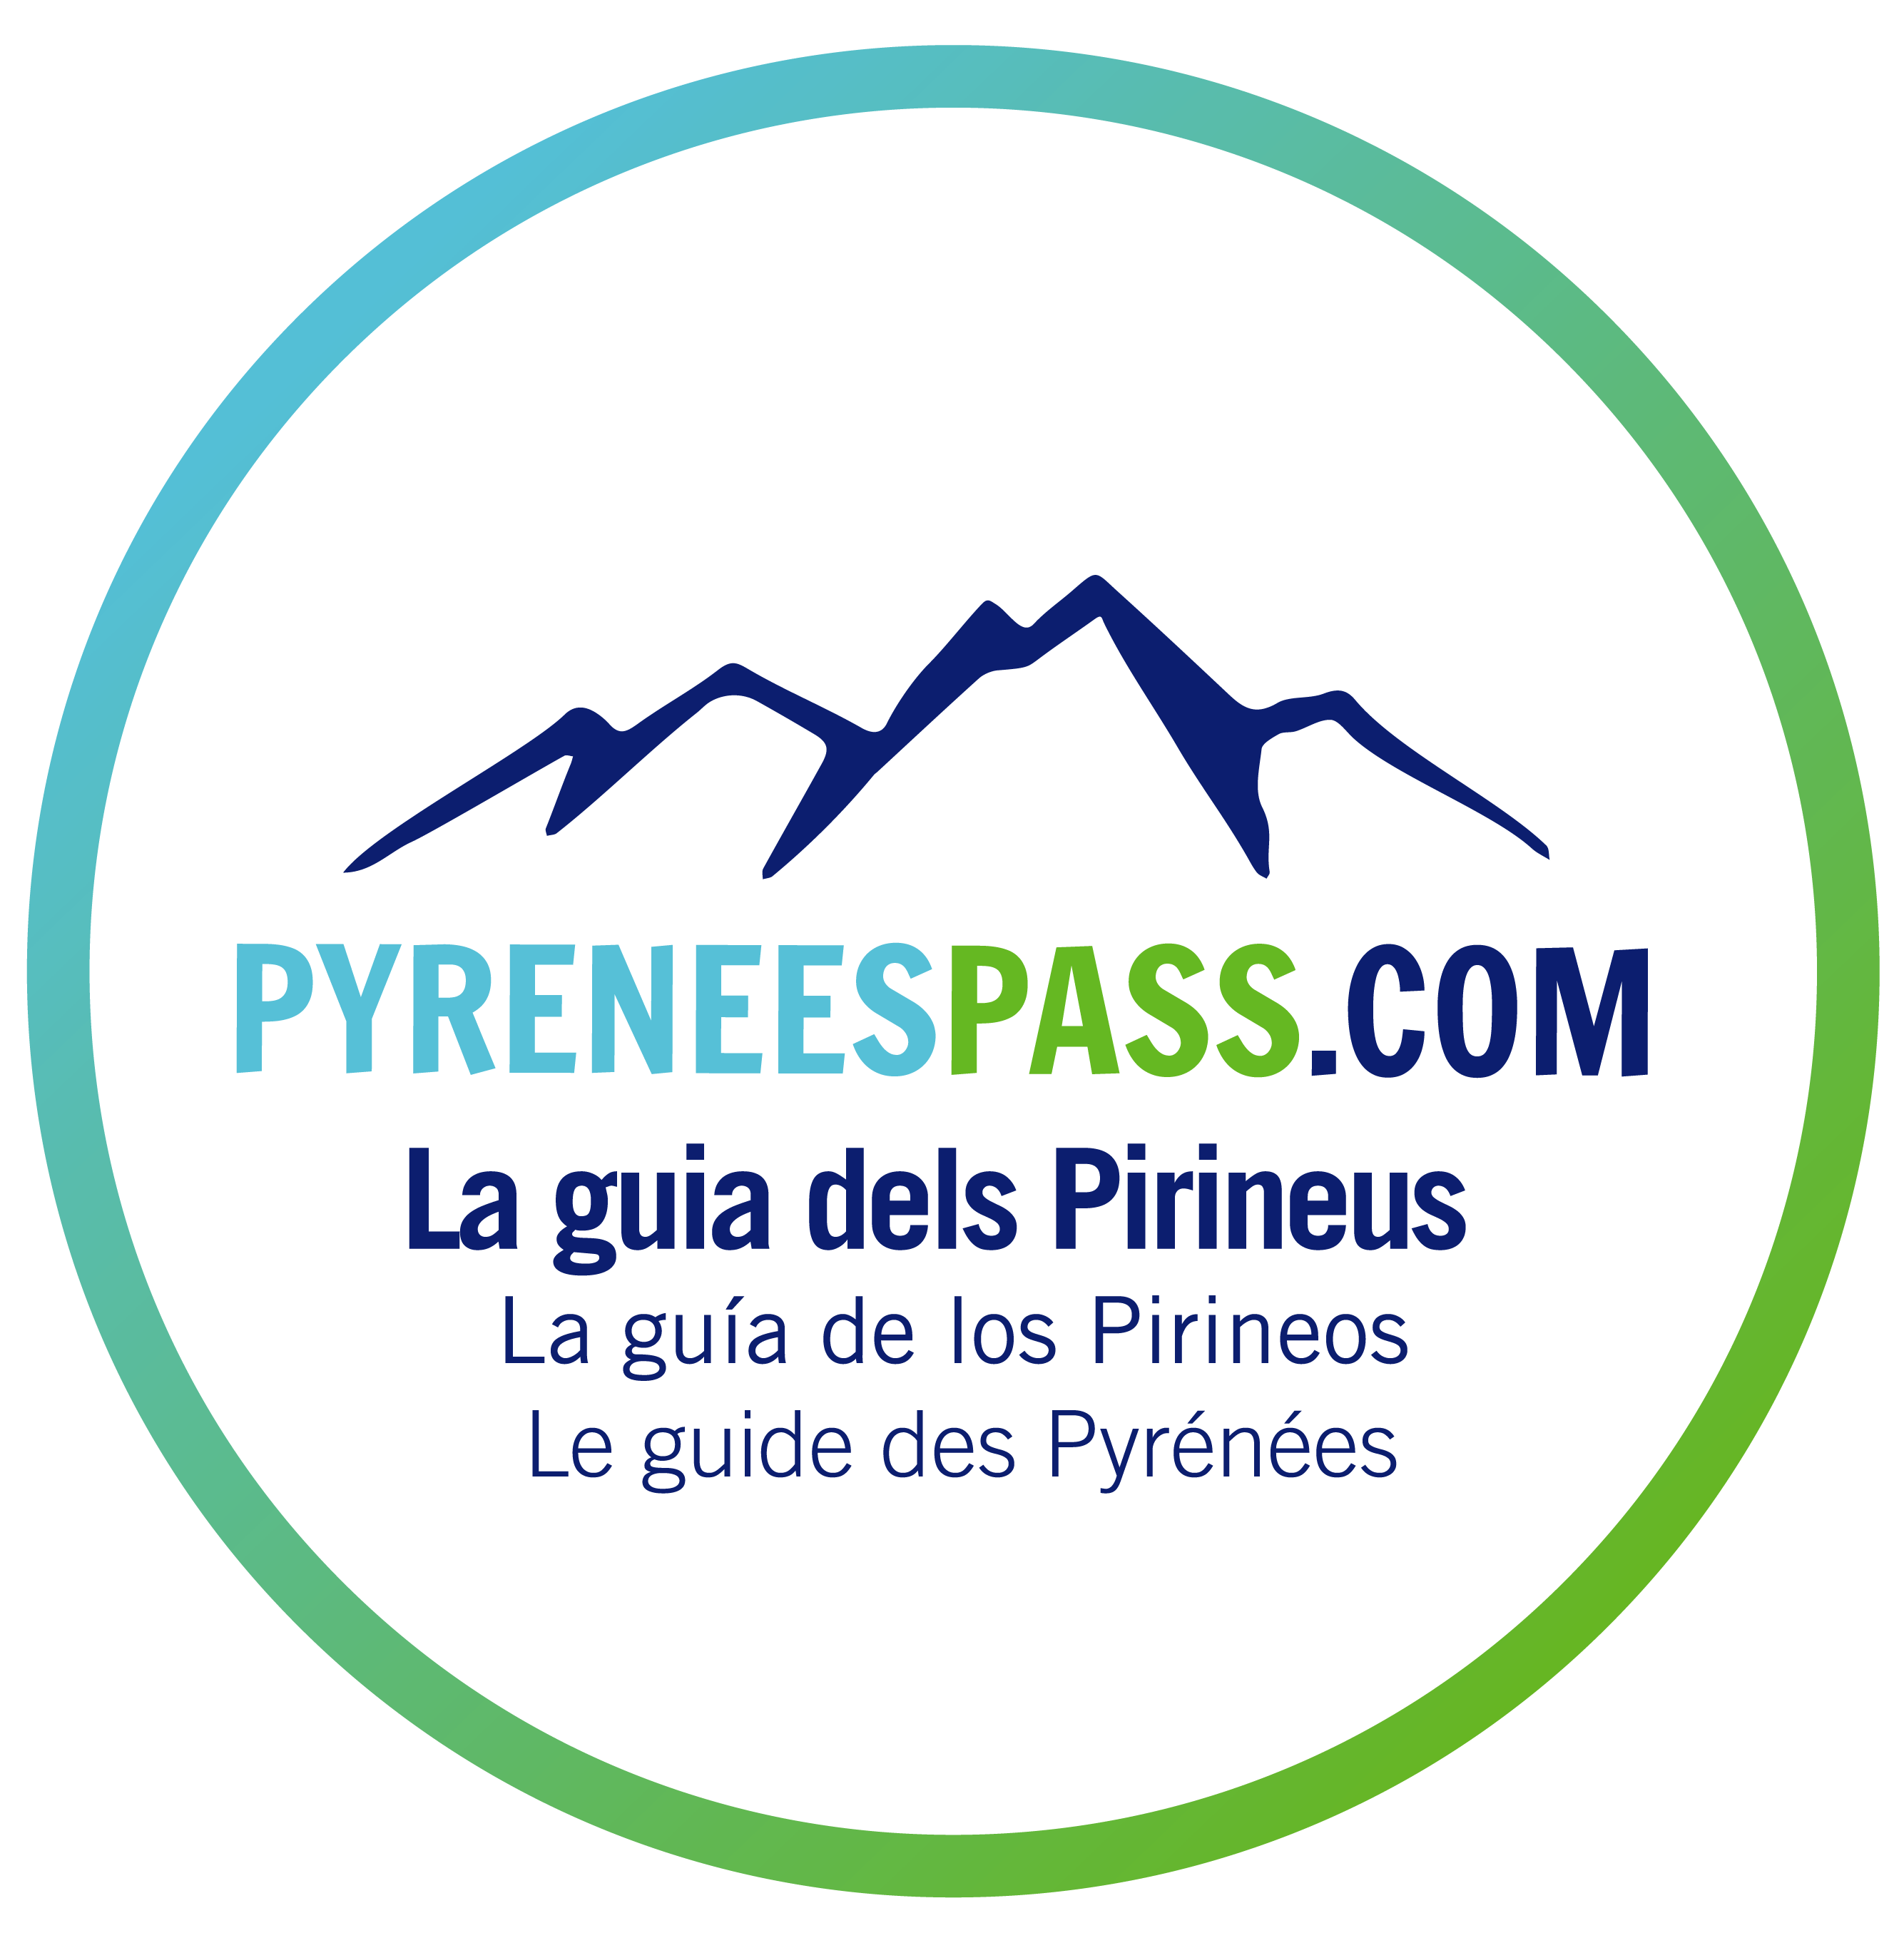 Pyreness Pass